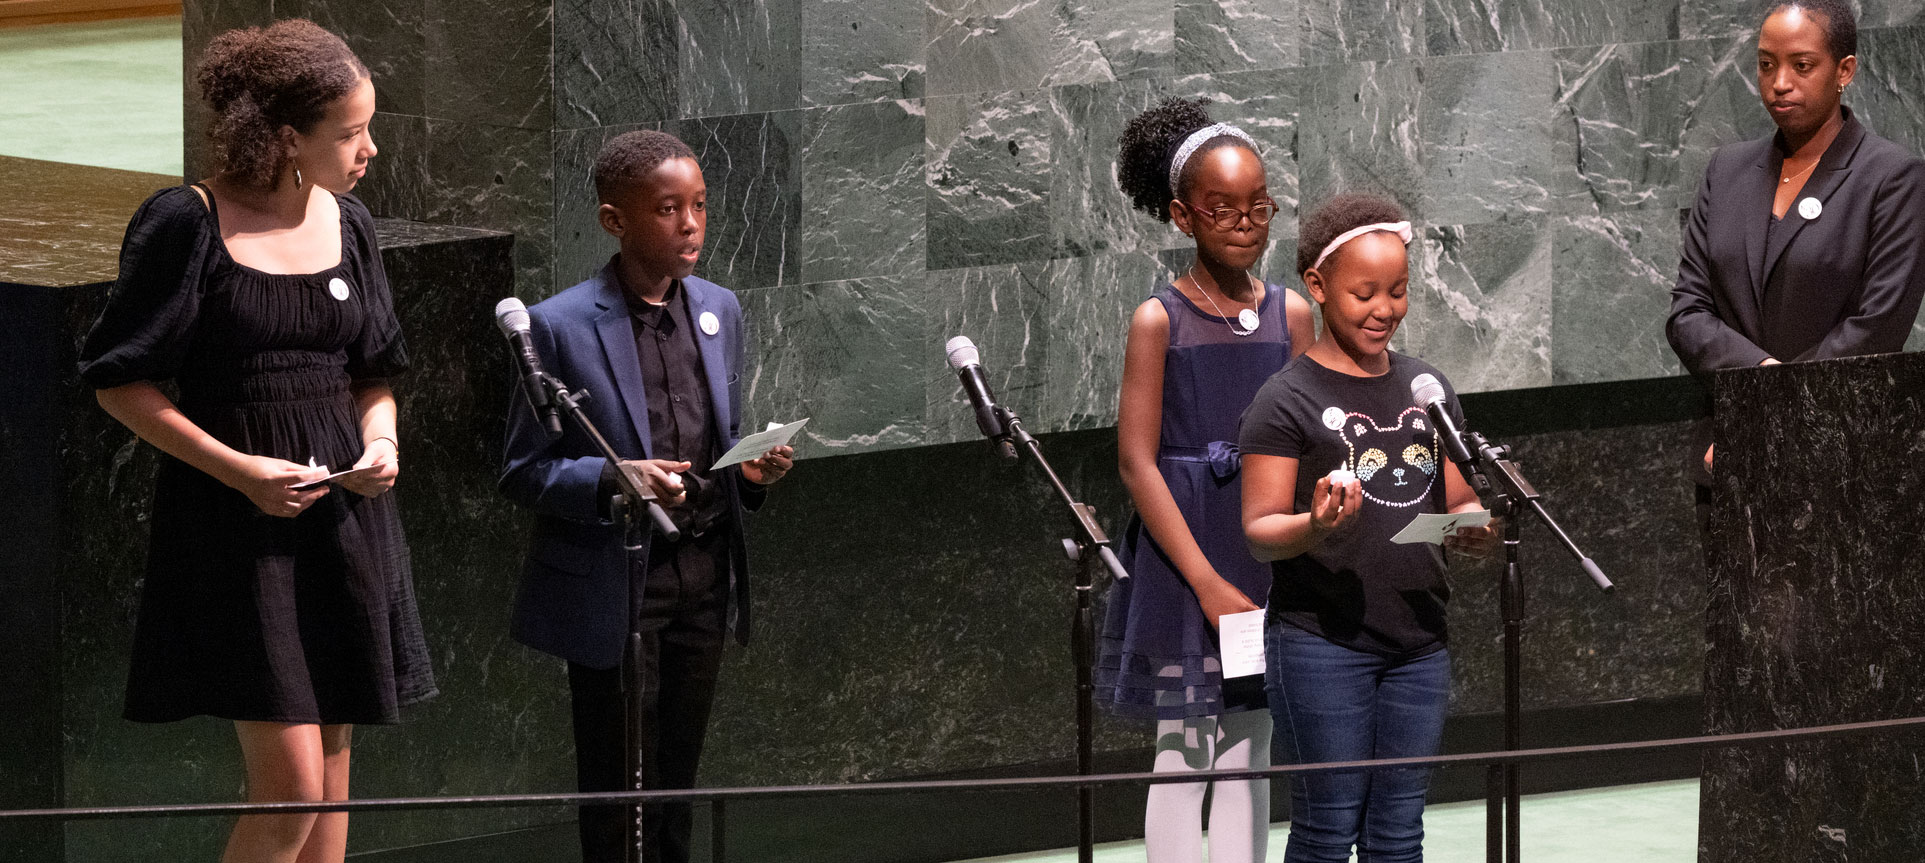 一位妇女和 4 个孩子站在大会堂讲台上发言的照片